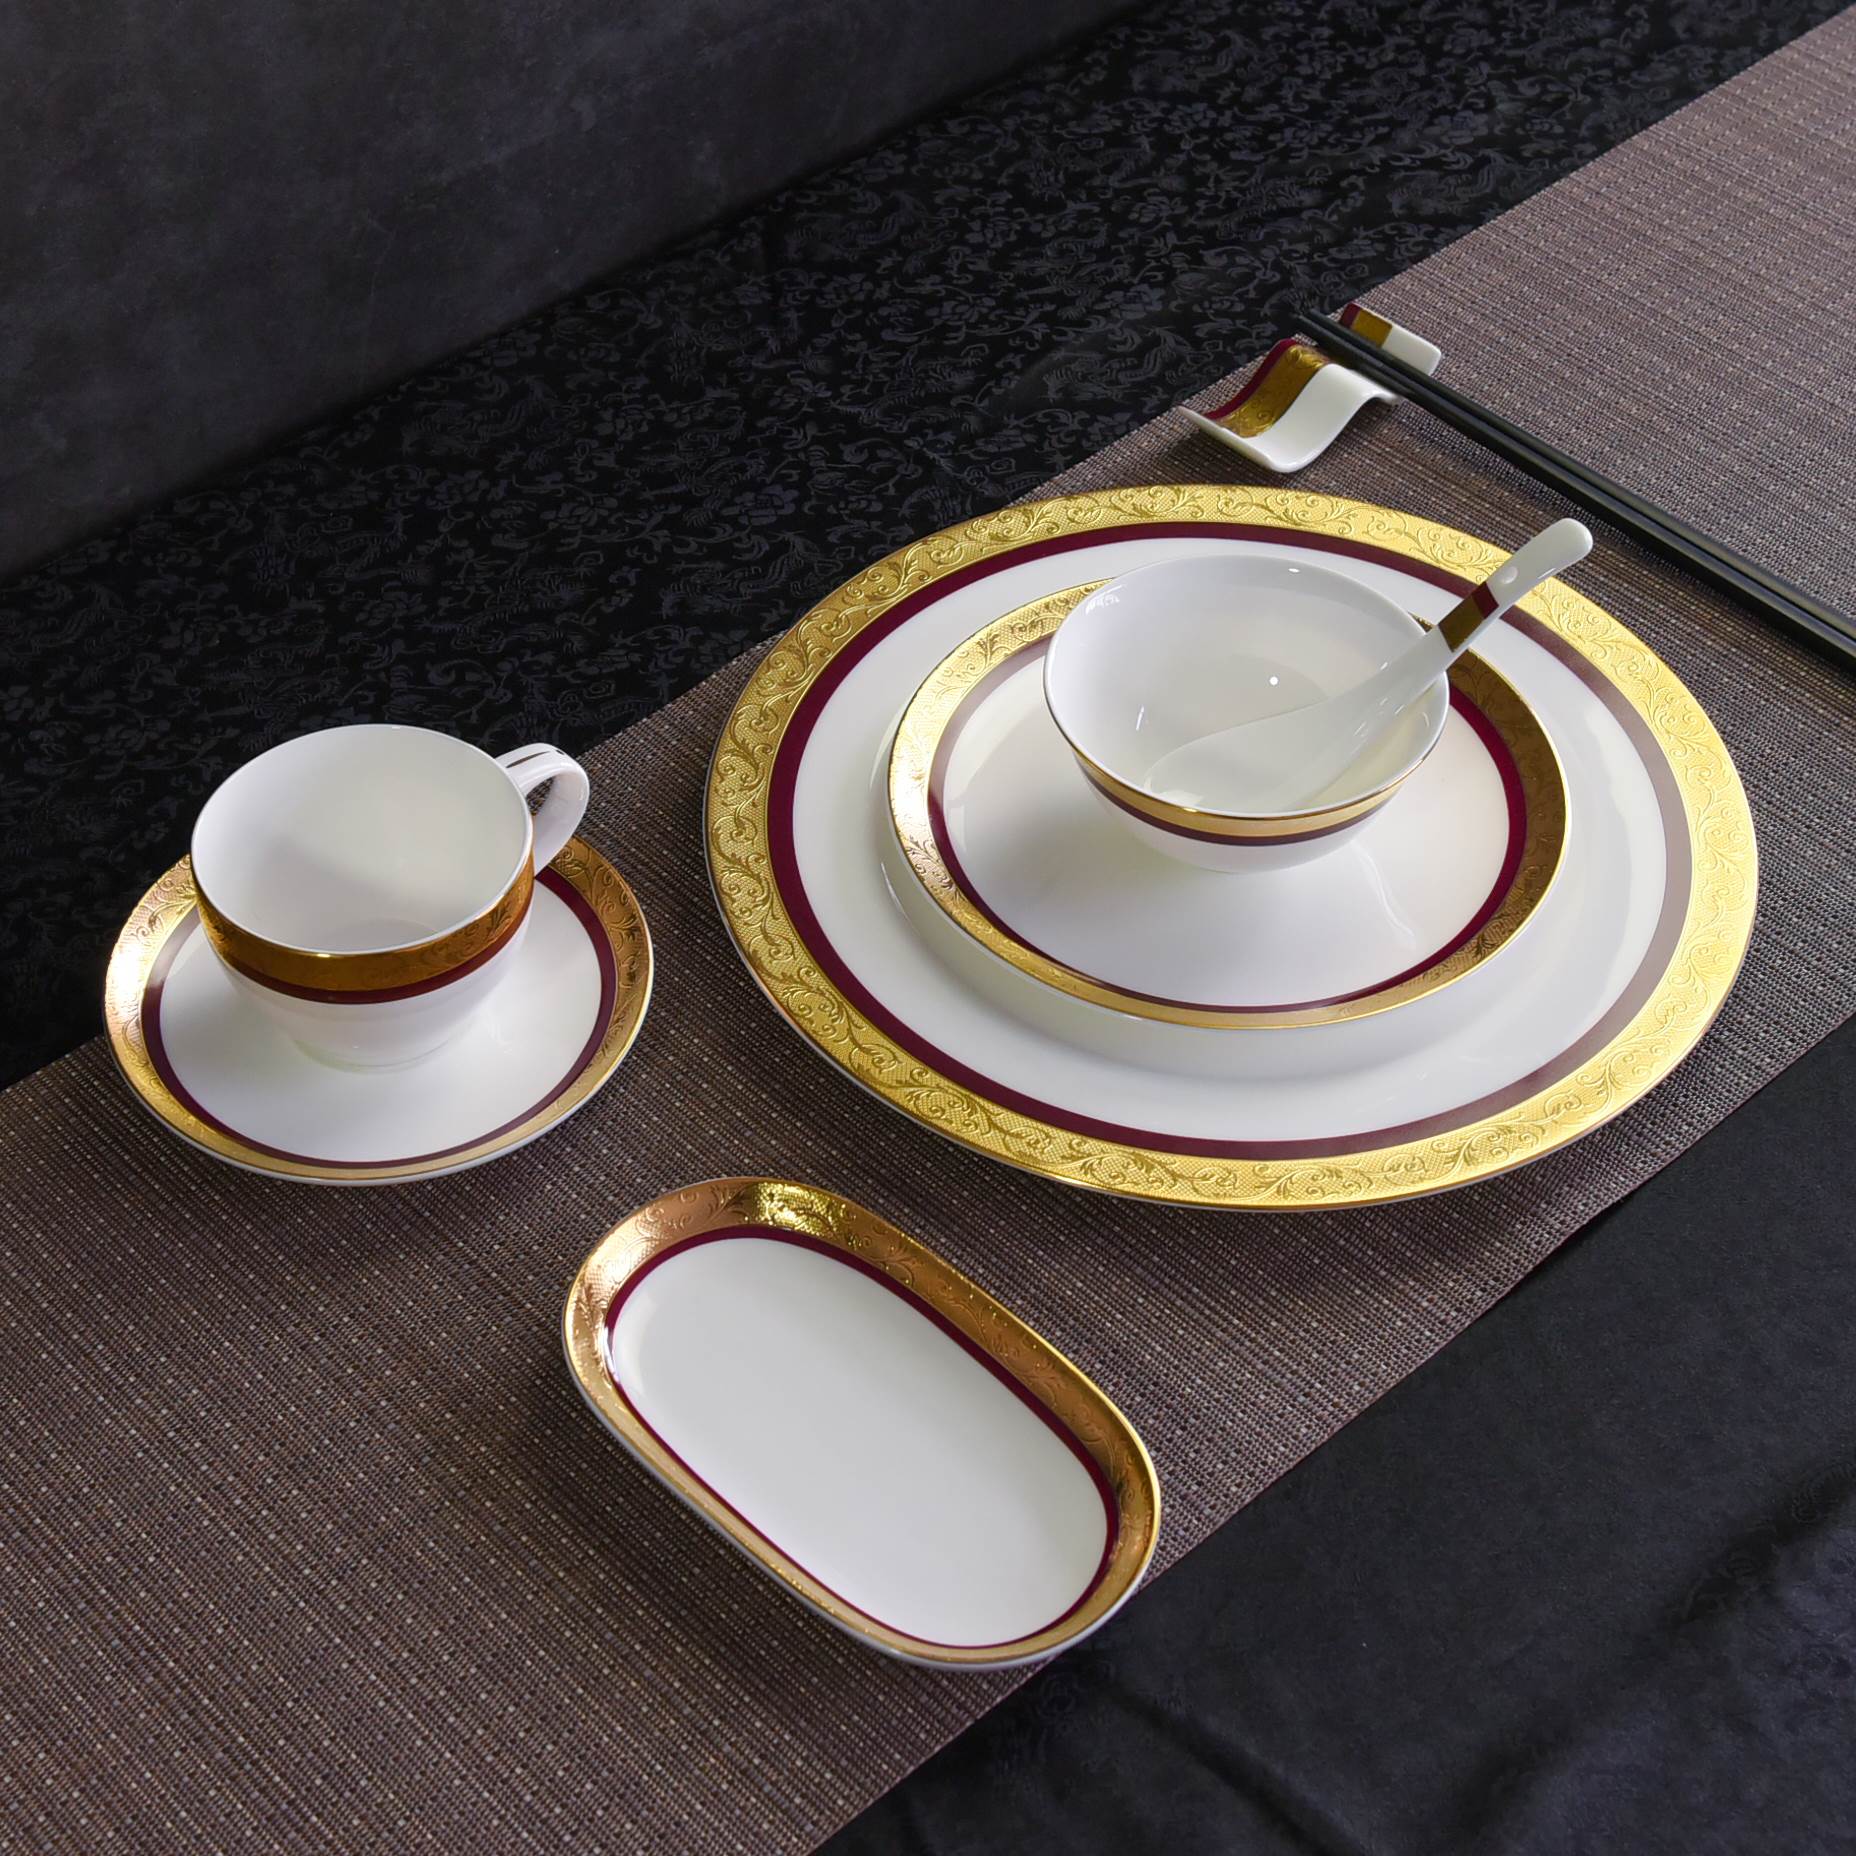 唯奥酒店摆台唐山骨瓷碗盘碟勺套装定制中西式餐厅浮雕金